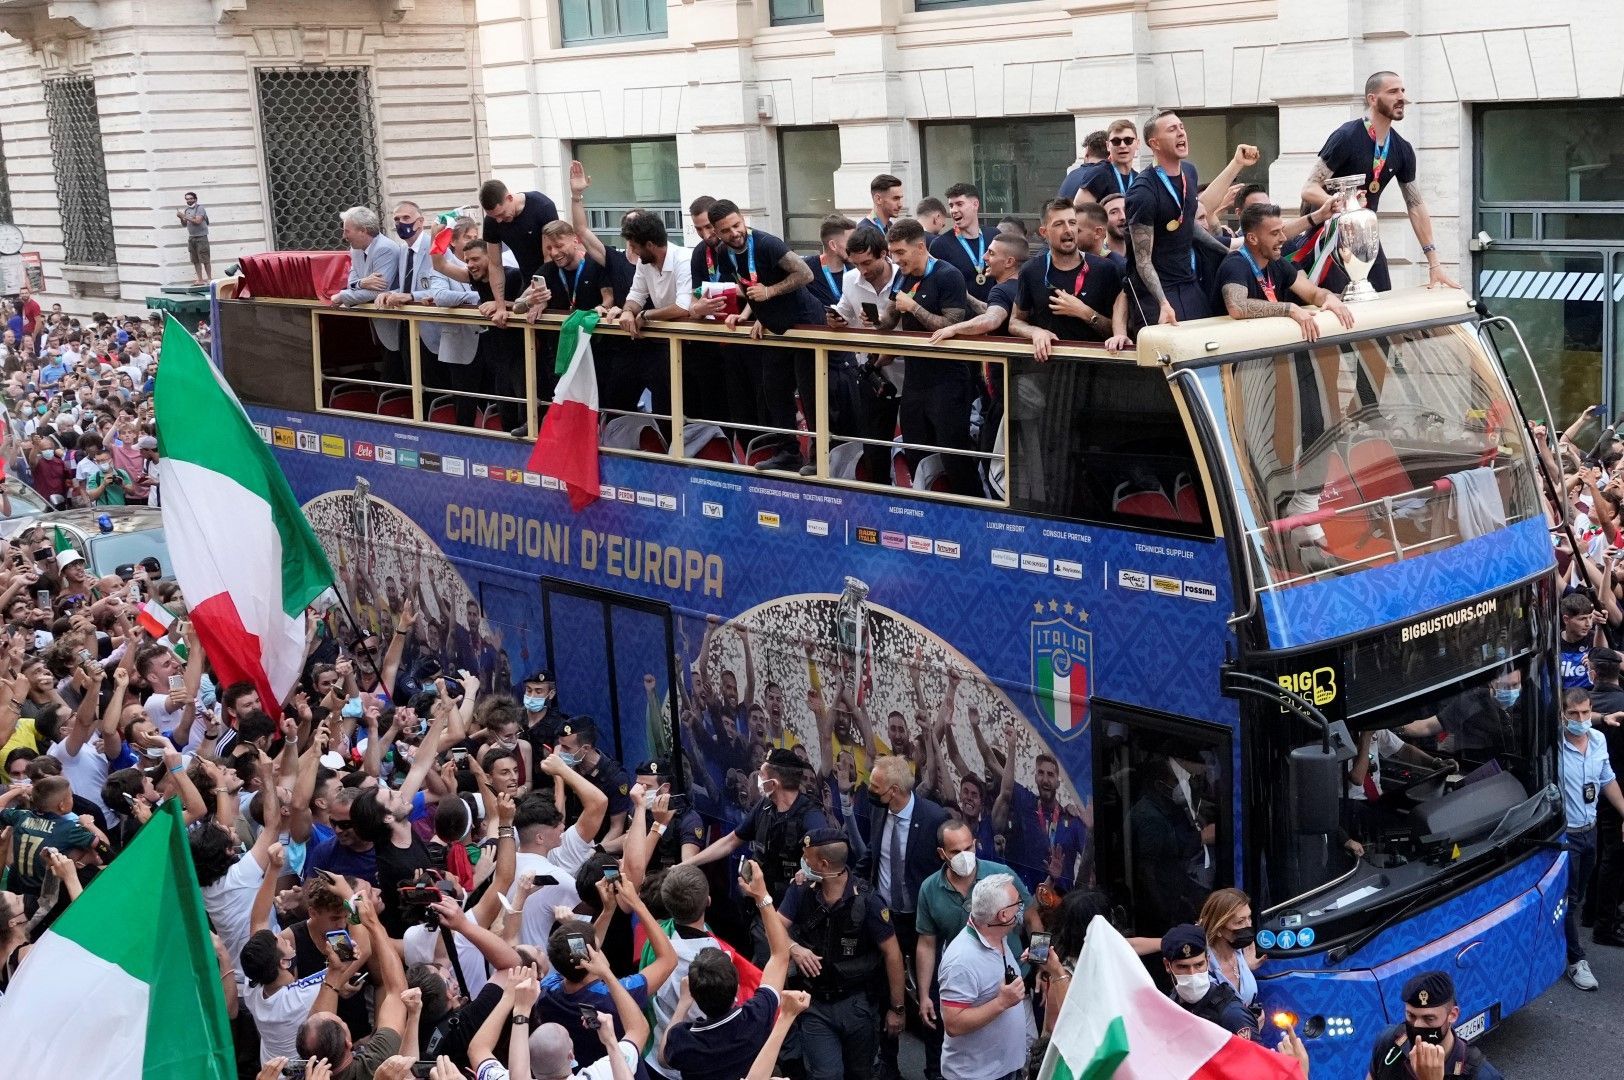 Тимът тръгна из улиците на Рим в открит автобус с подобаващия надпис: Шампиони на Европа